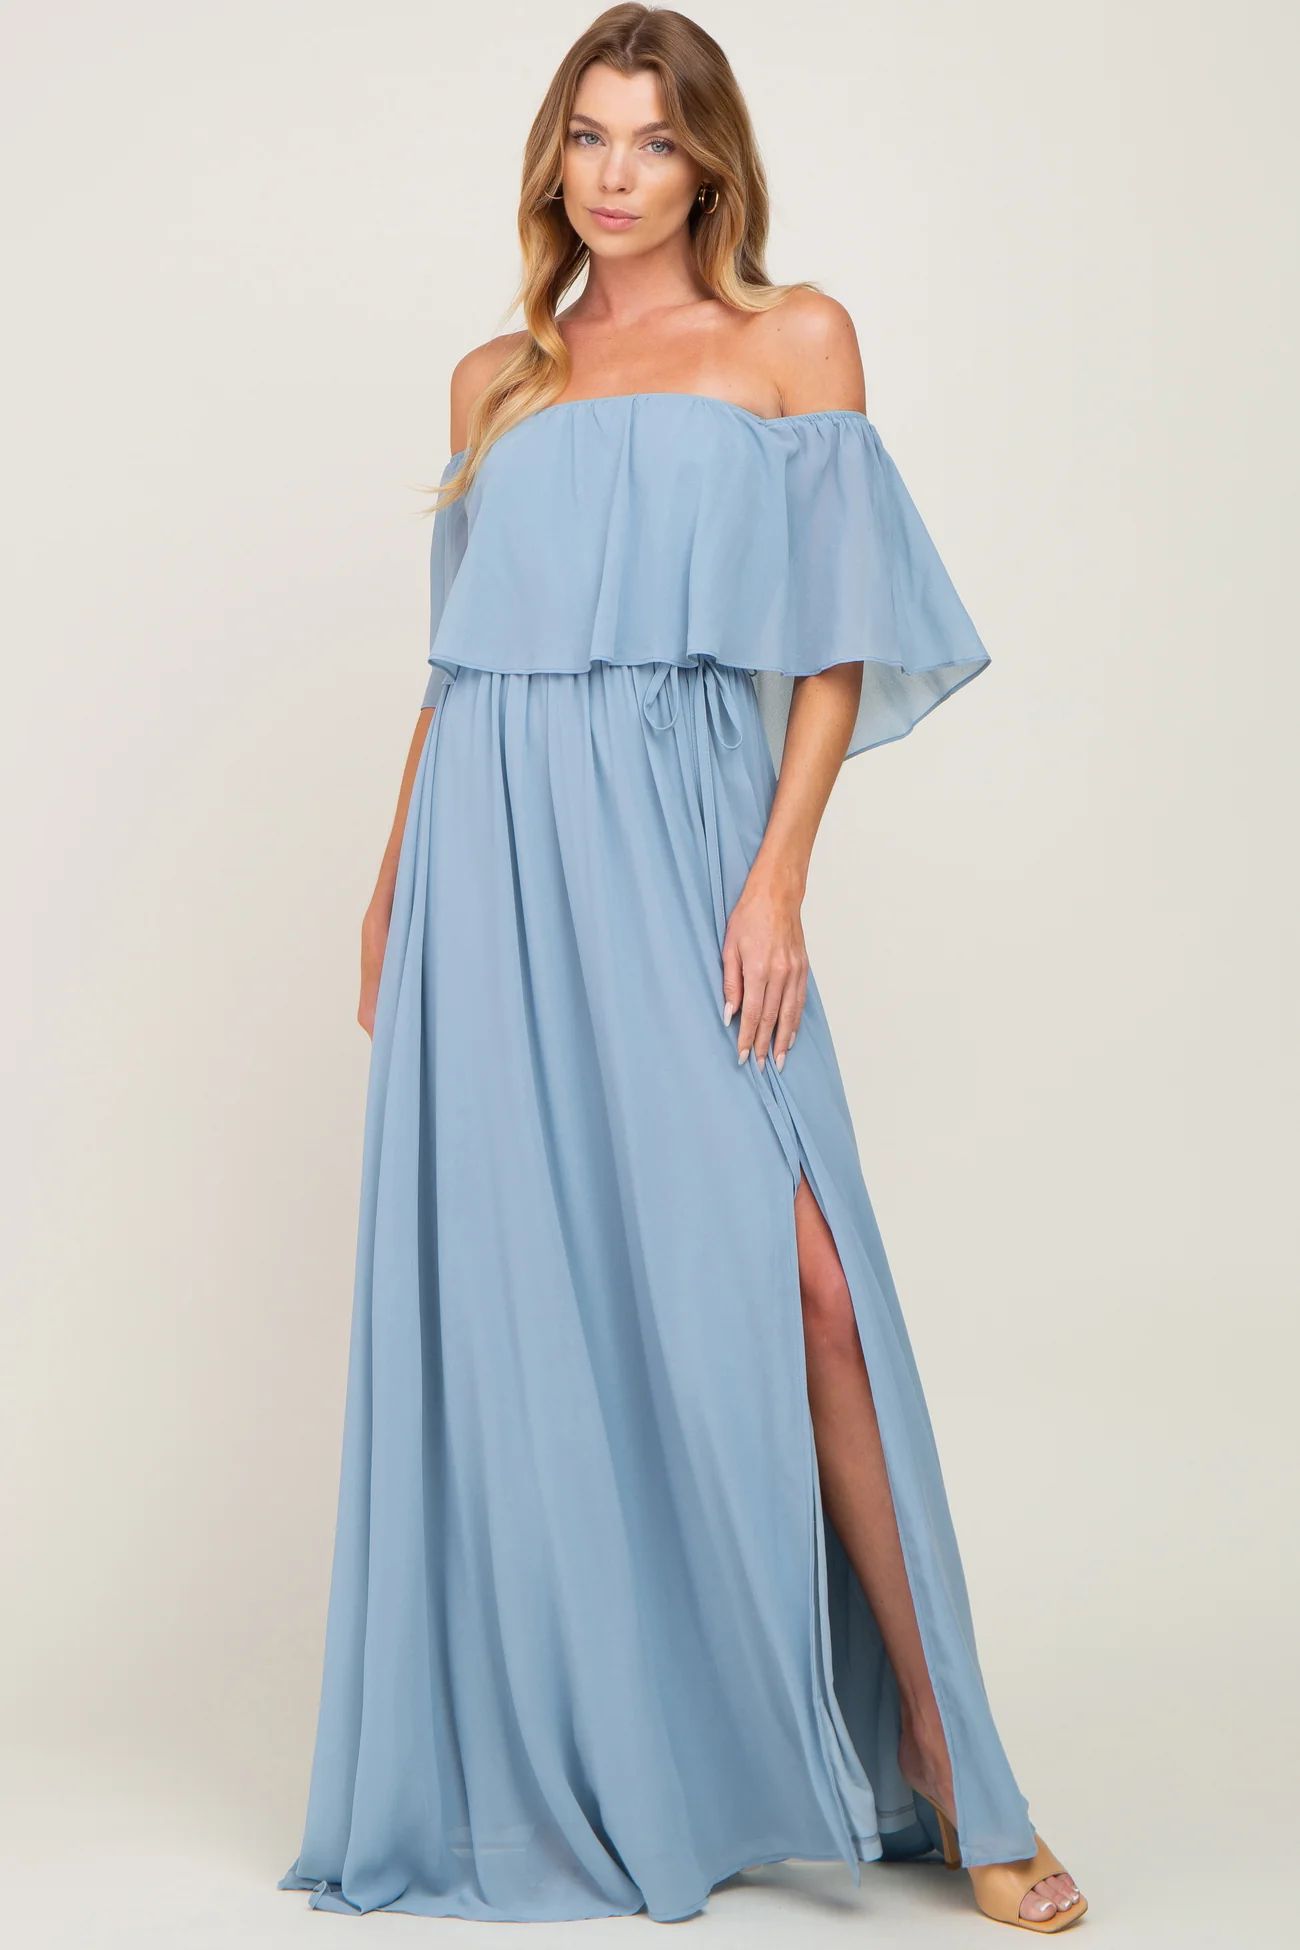 Light Blue Chiffon Off Shoulder Maternity Maxi Dress | PinkBlush Maternity